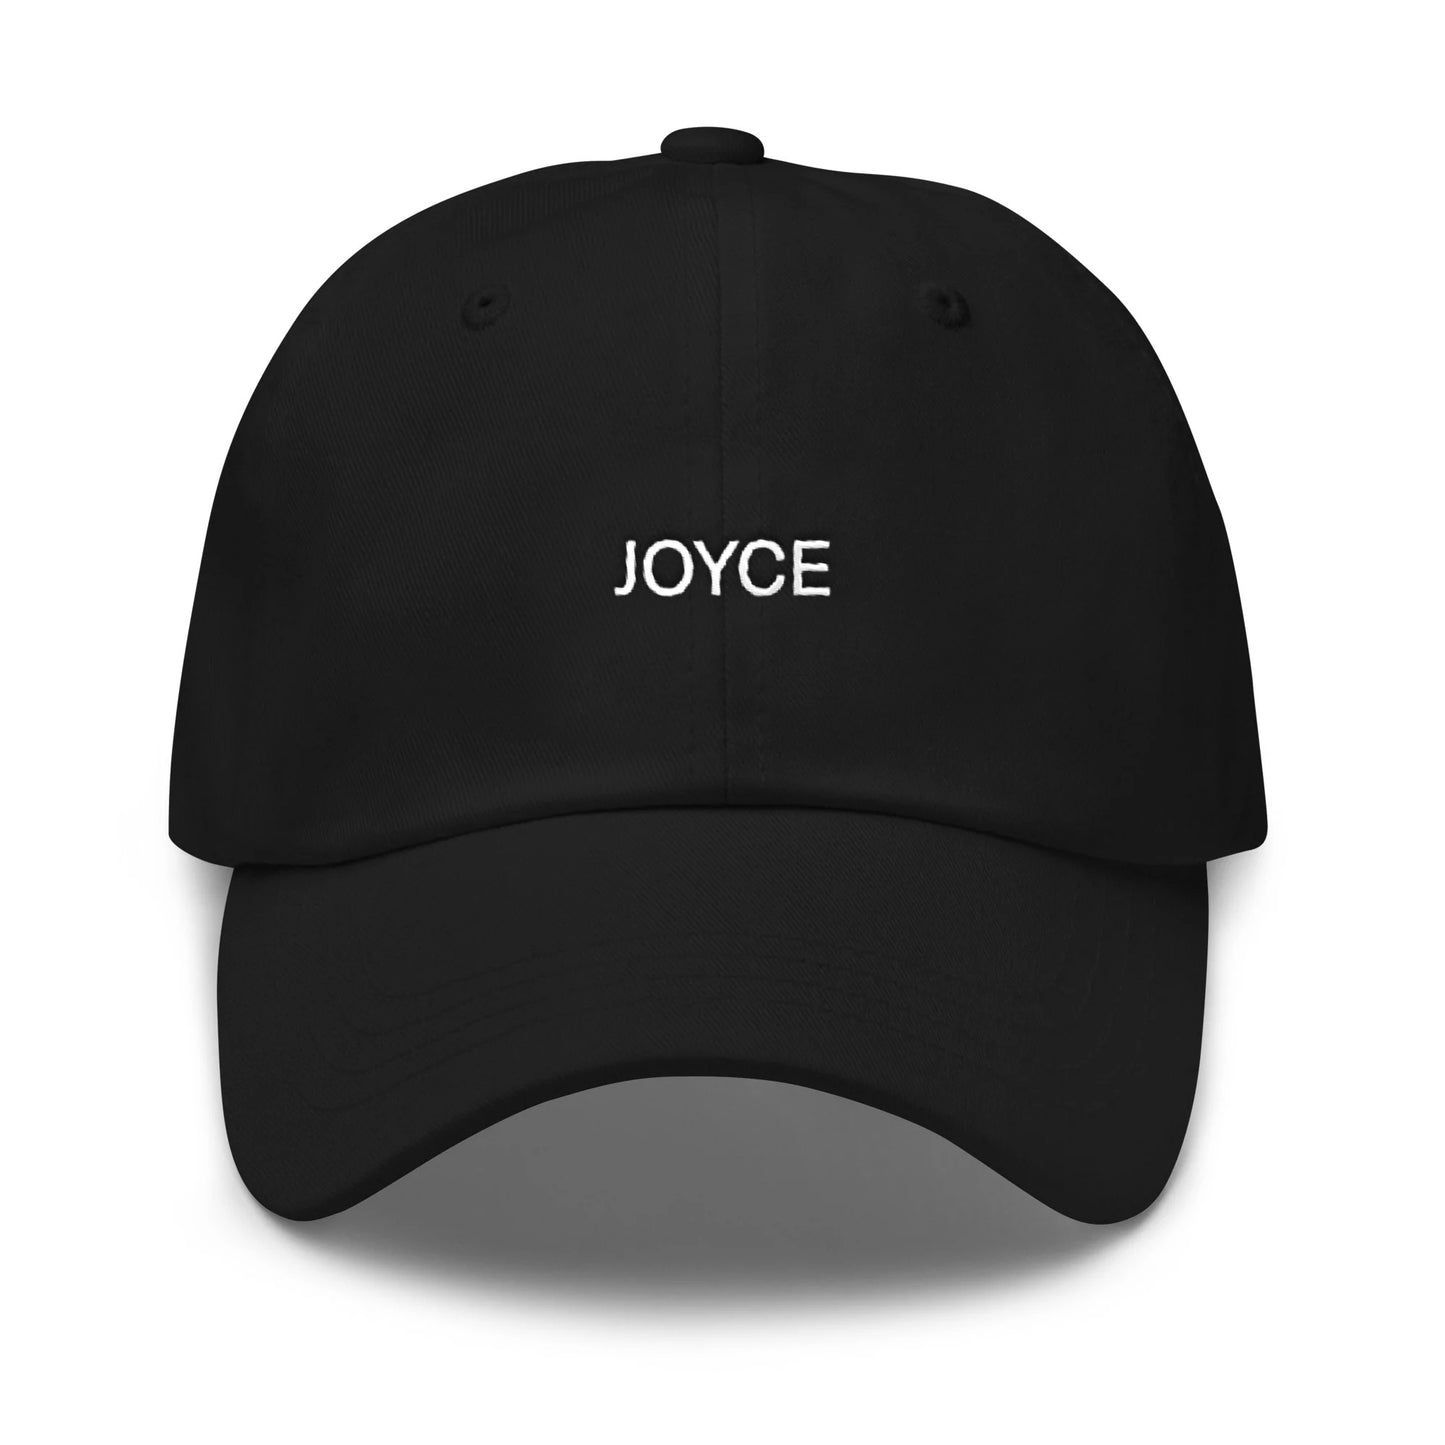 Joyce Hat